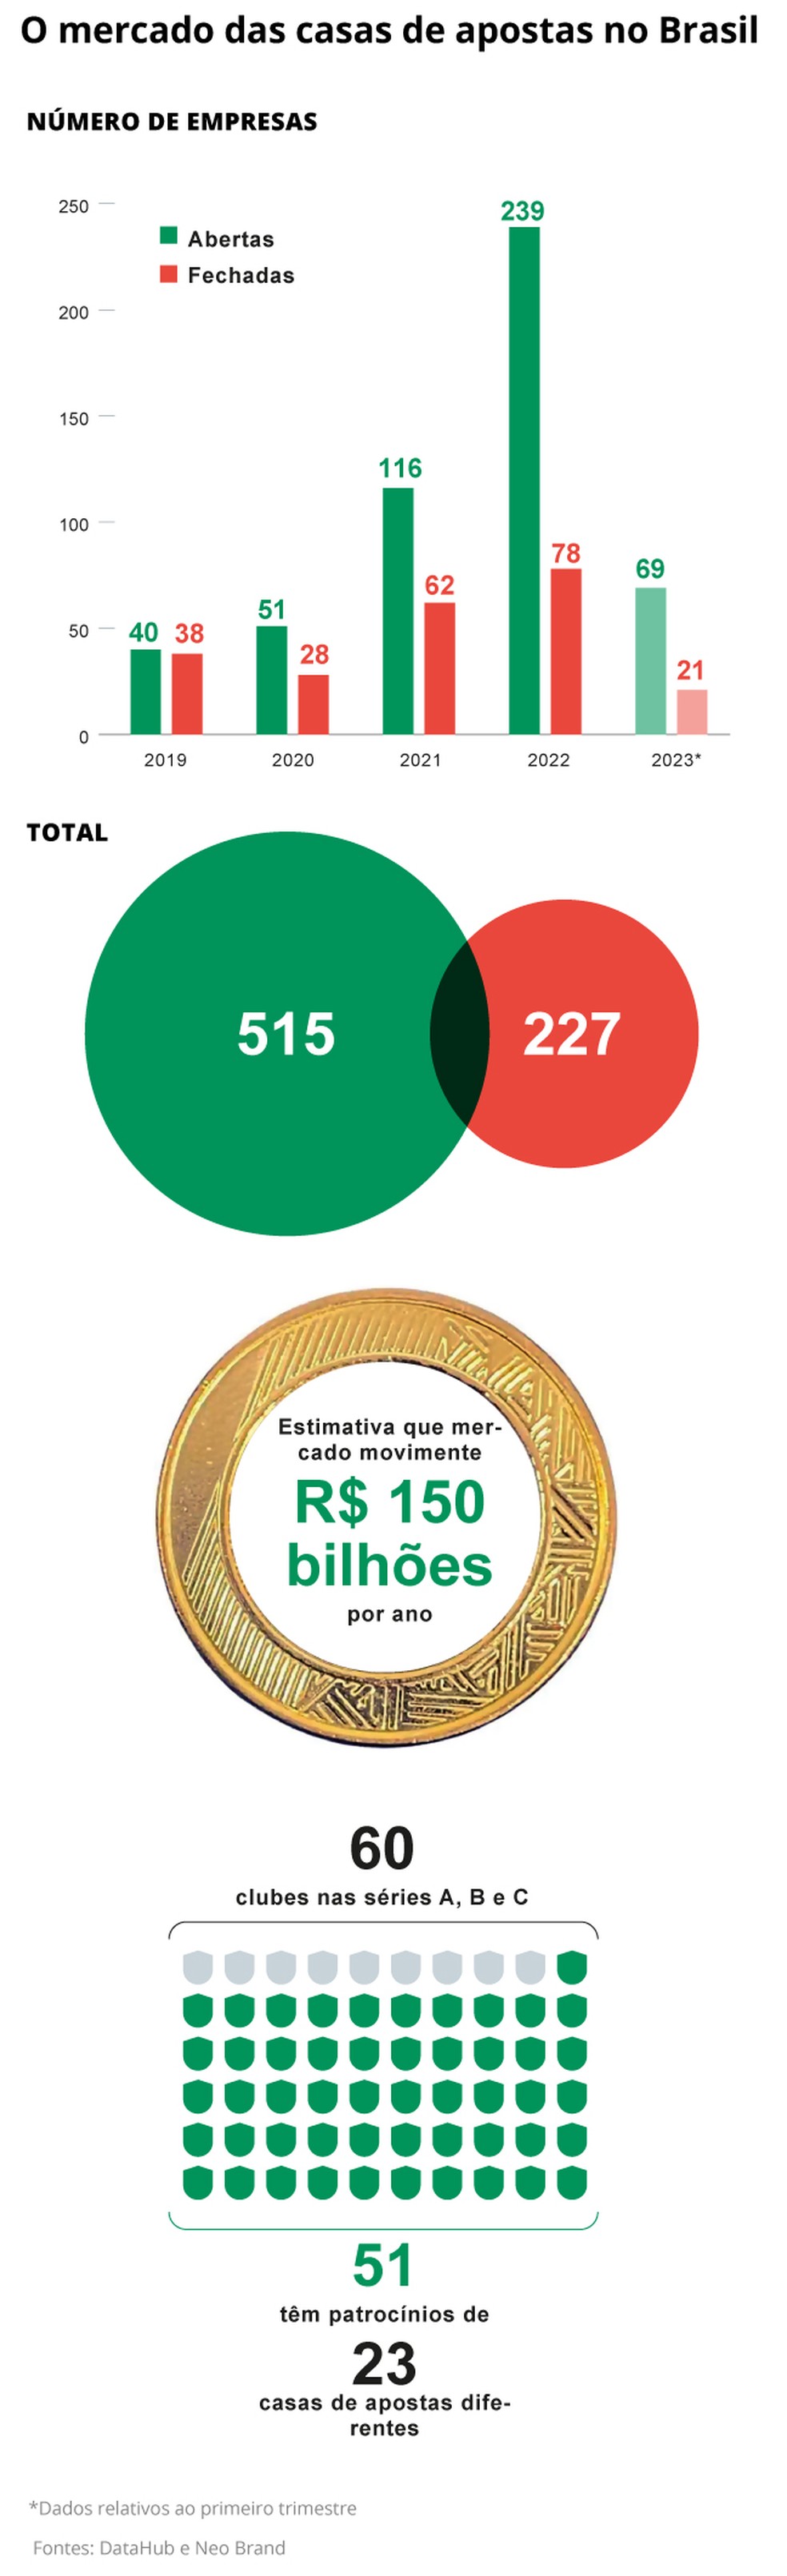 O que mudará se legalizados os jogos de azar no Brasil - BNLData